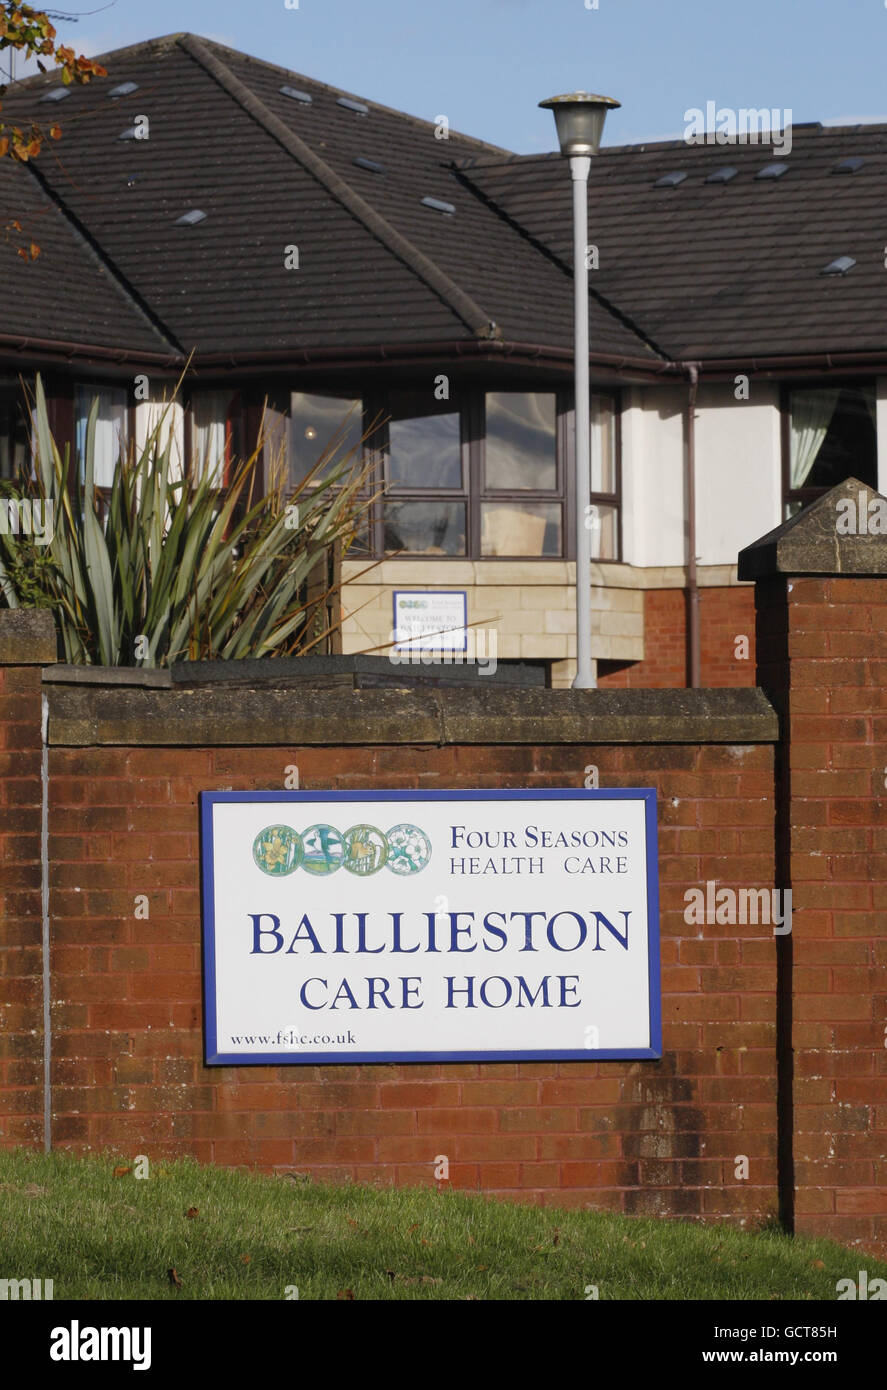 Un point de vue général du centre de soins Baillieston de Glasgow qui fait face à des allégations de mauvais traitements envers des résidents âgés. Banque D'Images